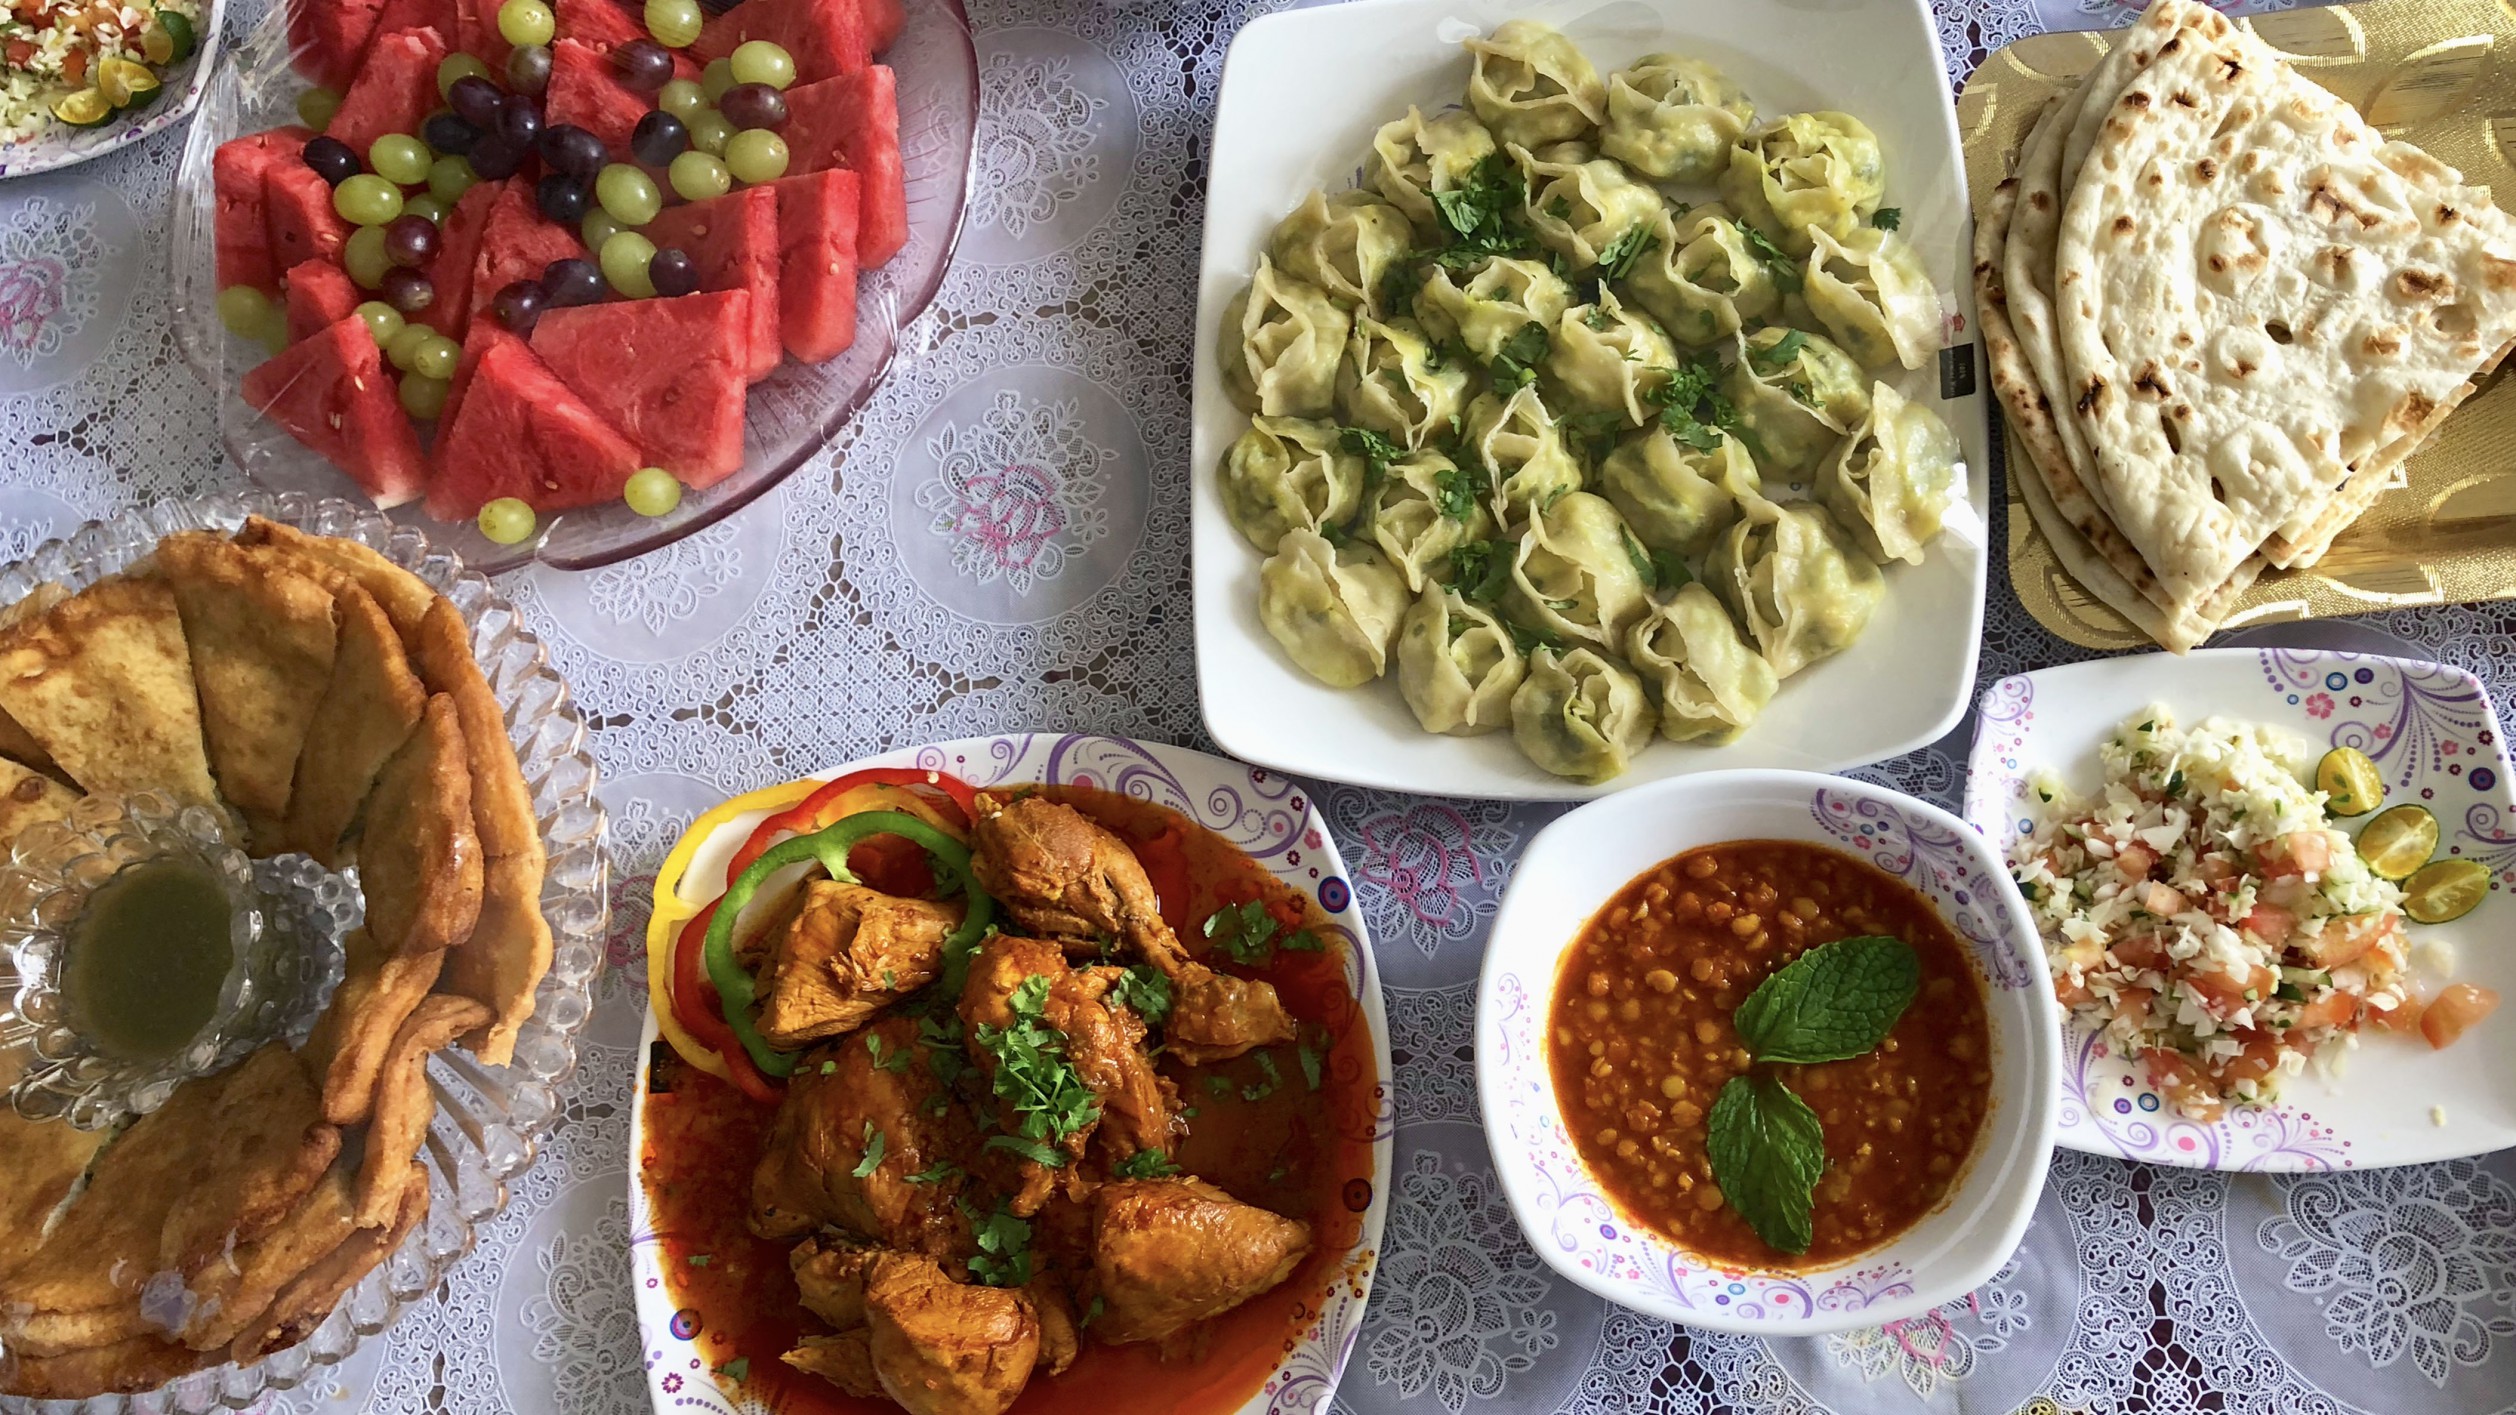 Meals that rebuild refugee lives